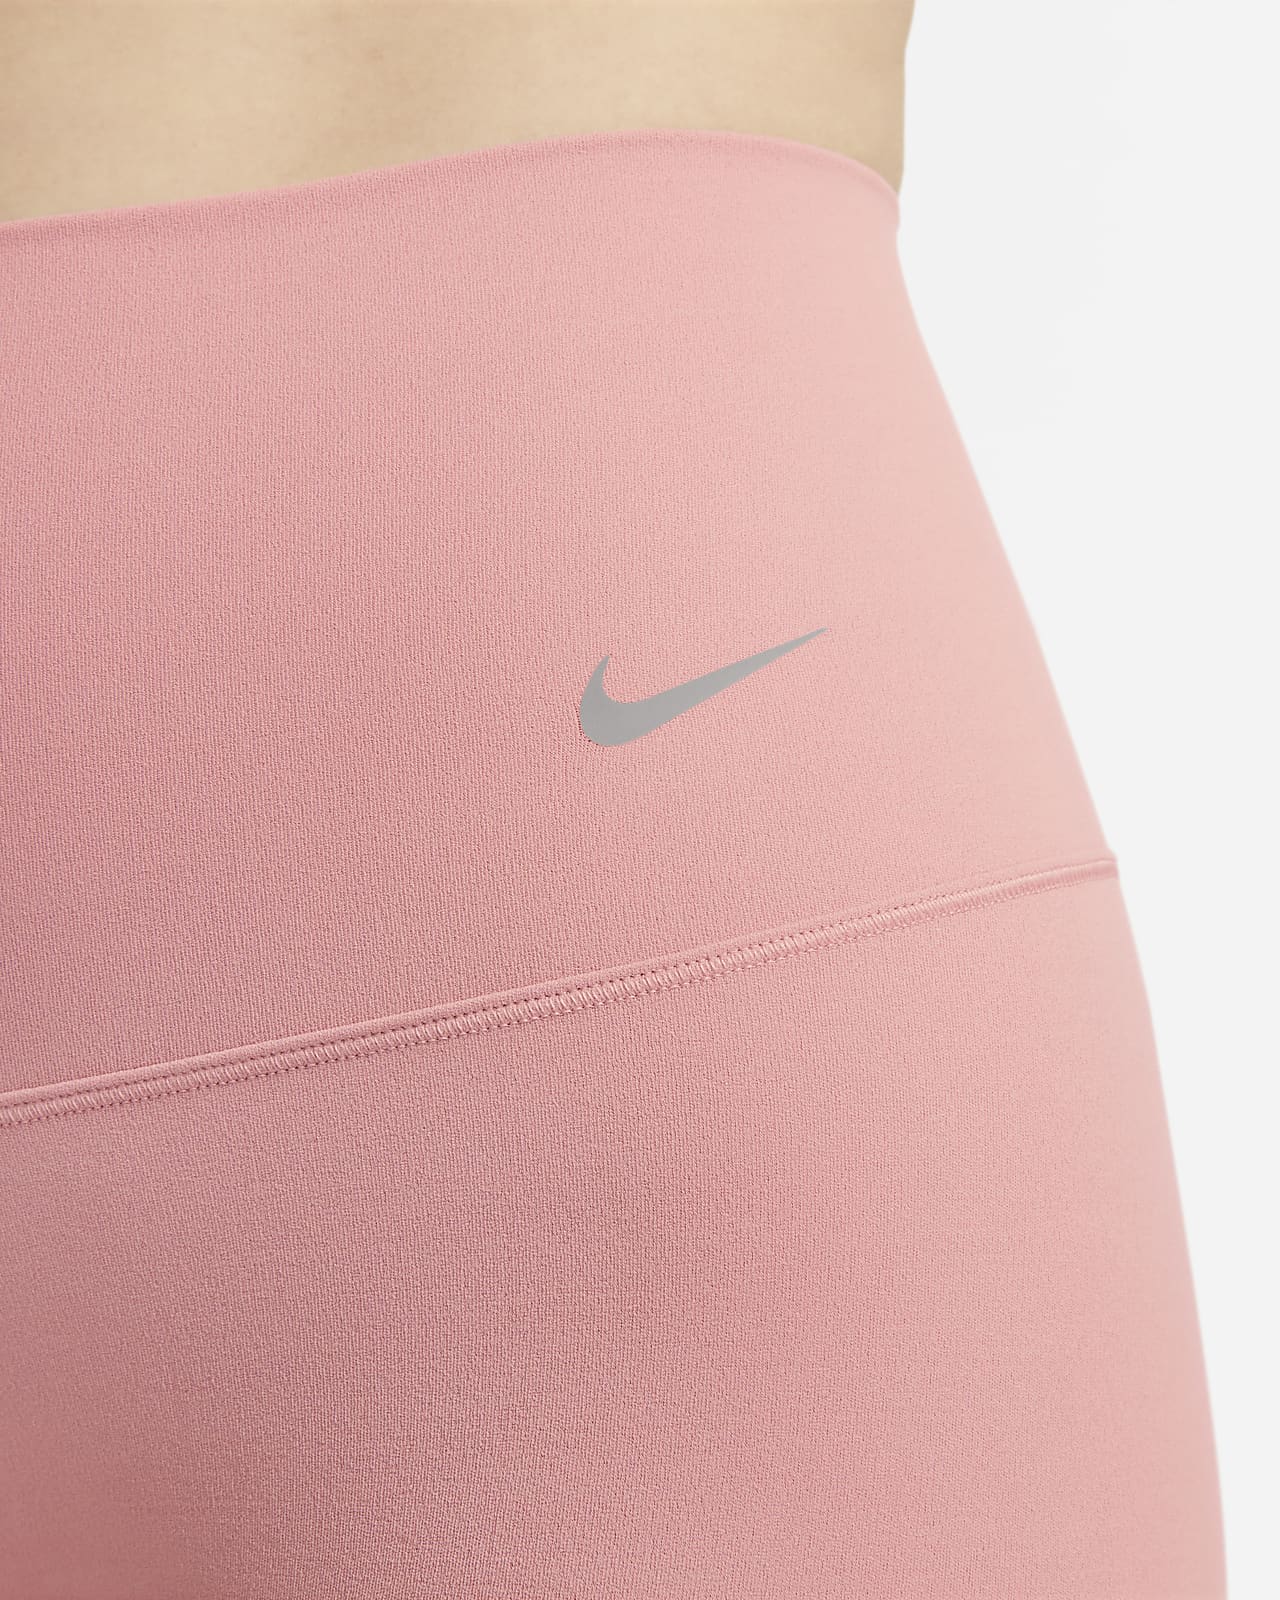 Nike Women's Zenvy Tie-Dye Gentle-Support High-Waisted 7/8